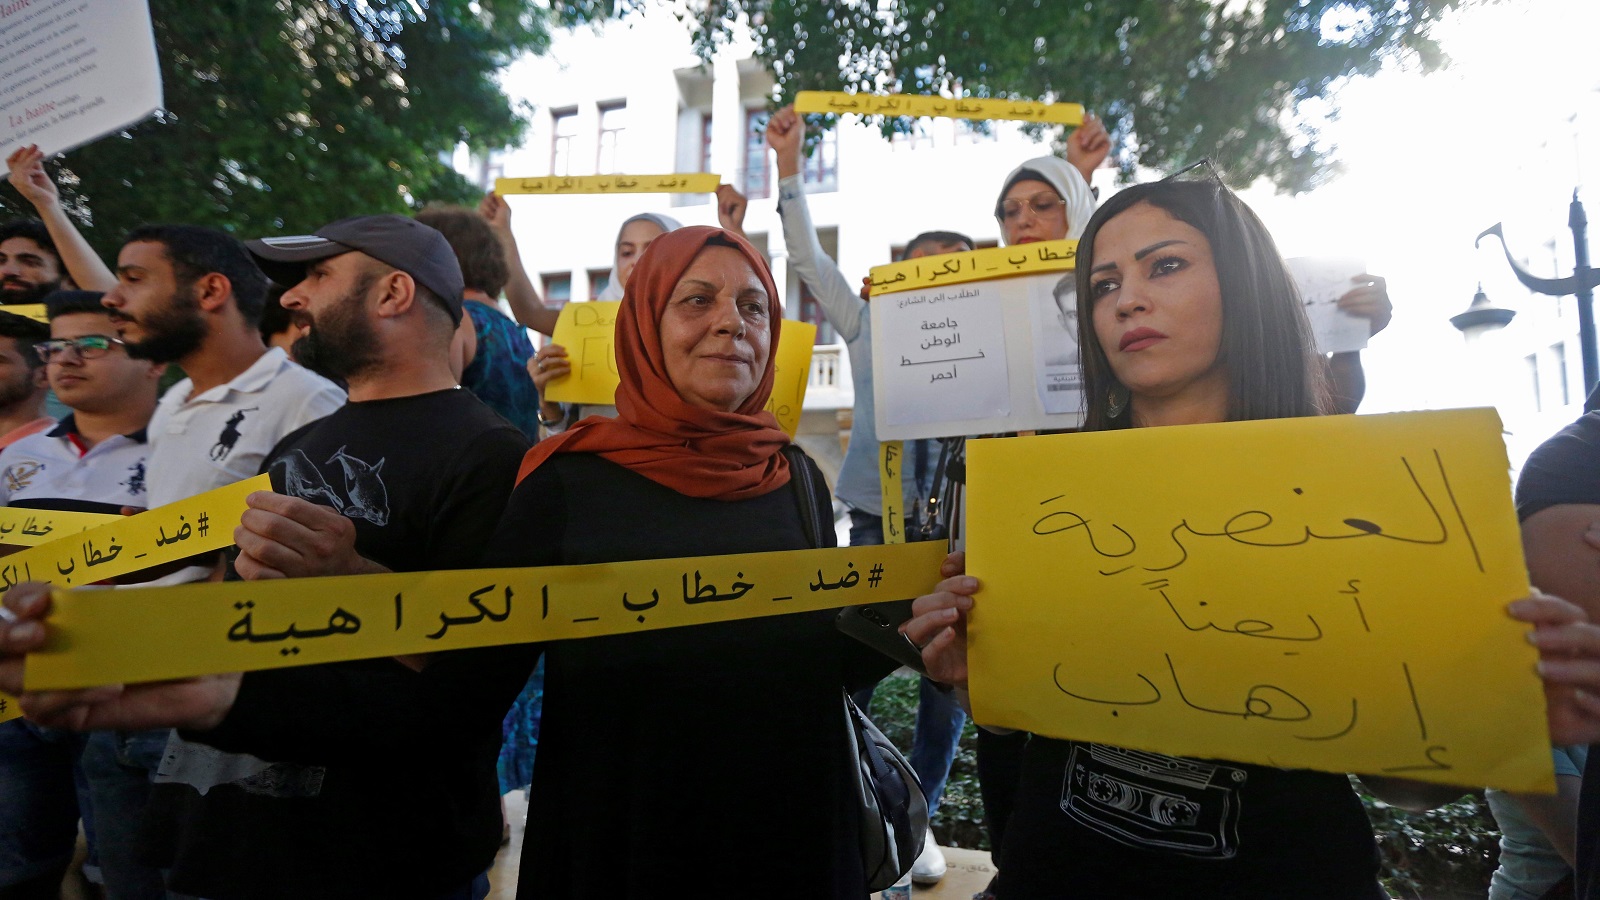 في السوشال ميديا اللبنانية: وباء الكراهية!